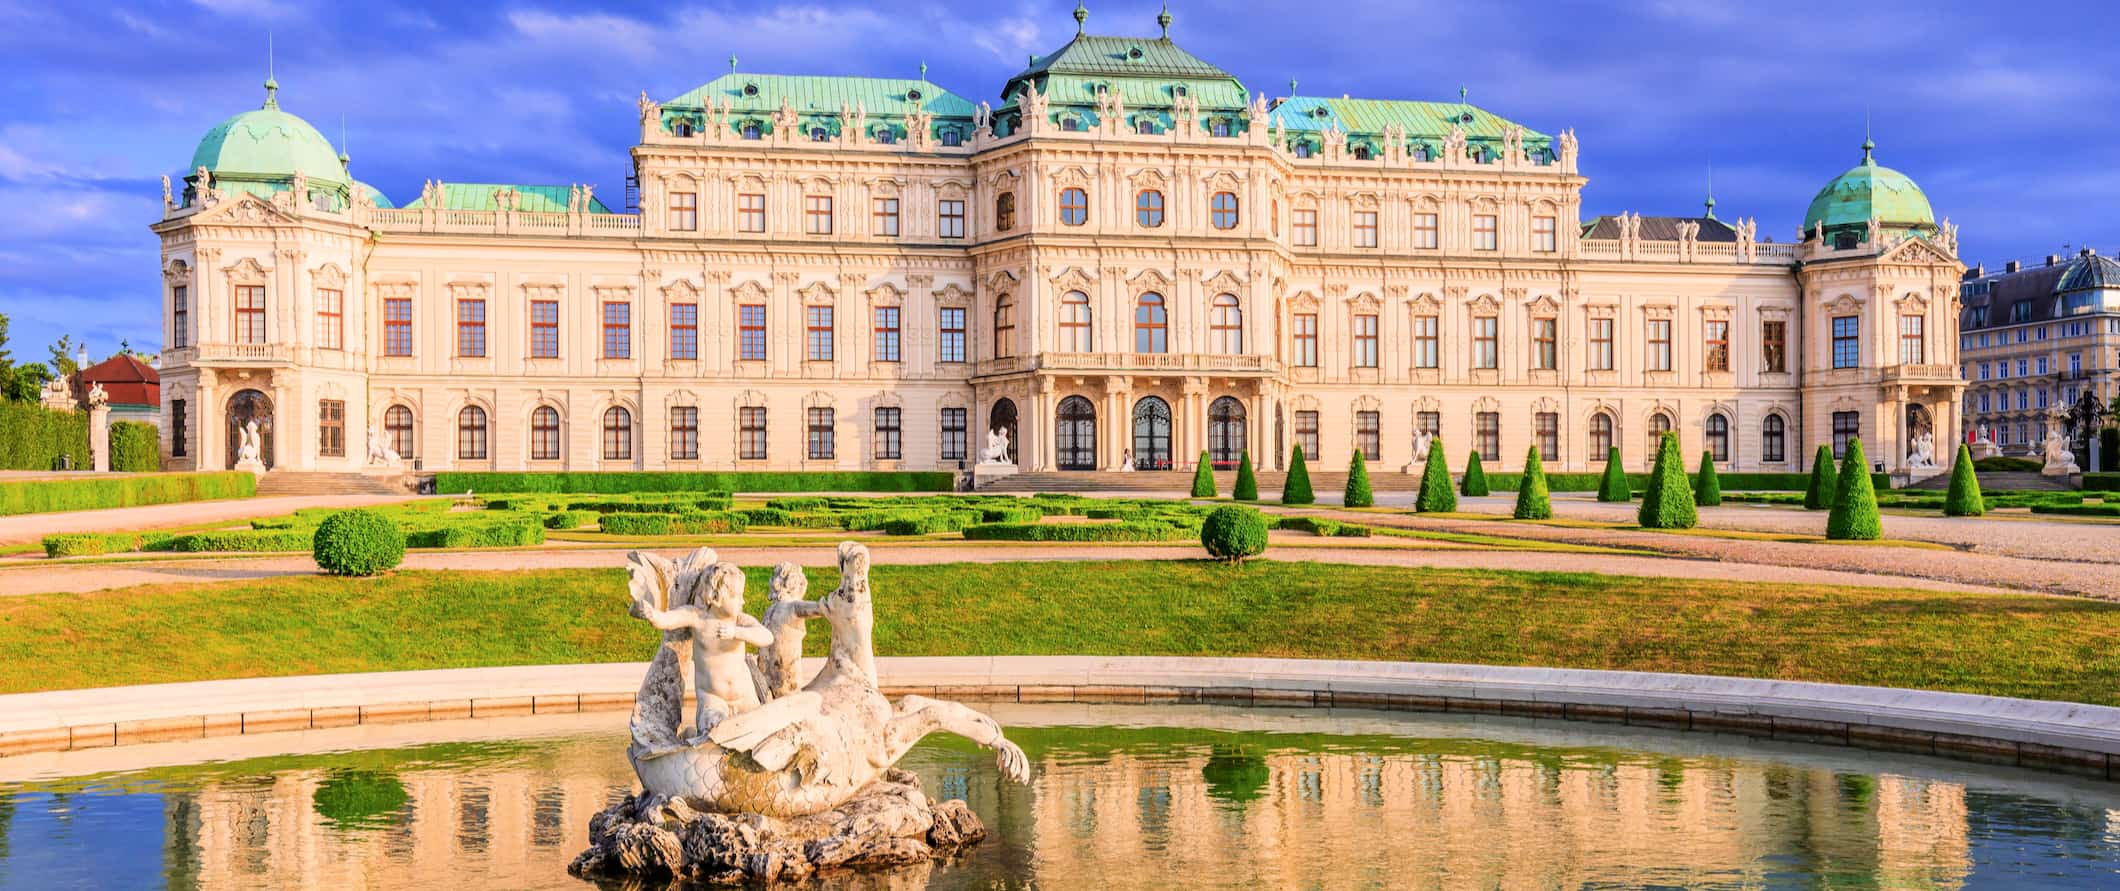 Enorme palácio histórico na bela Viena, Áustria